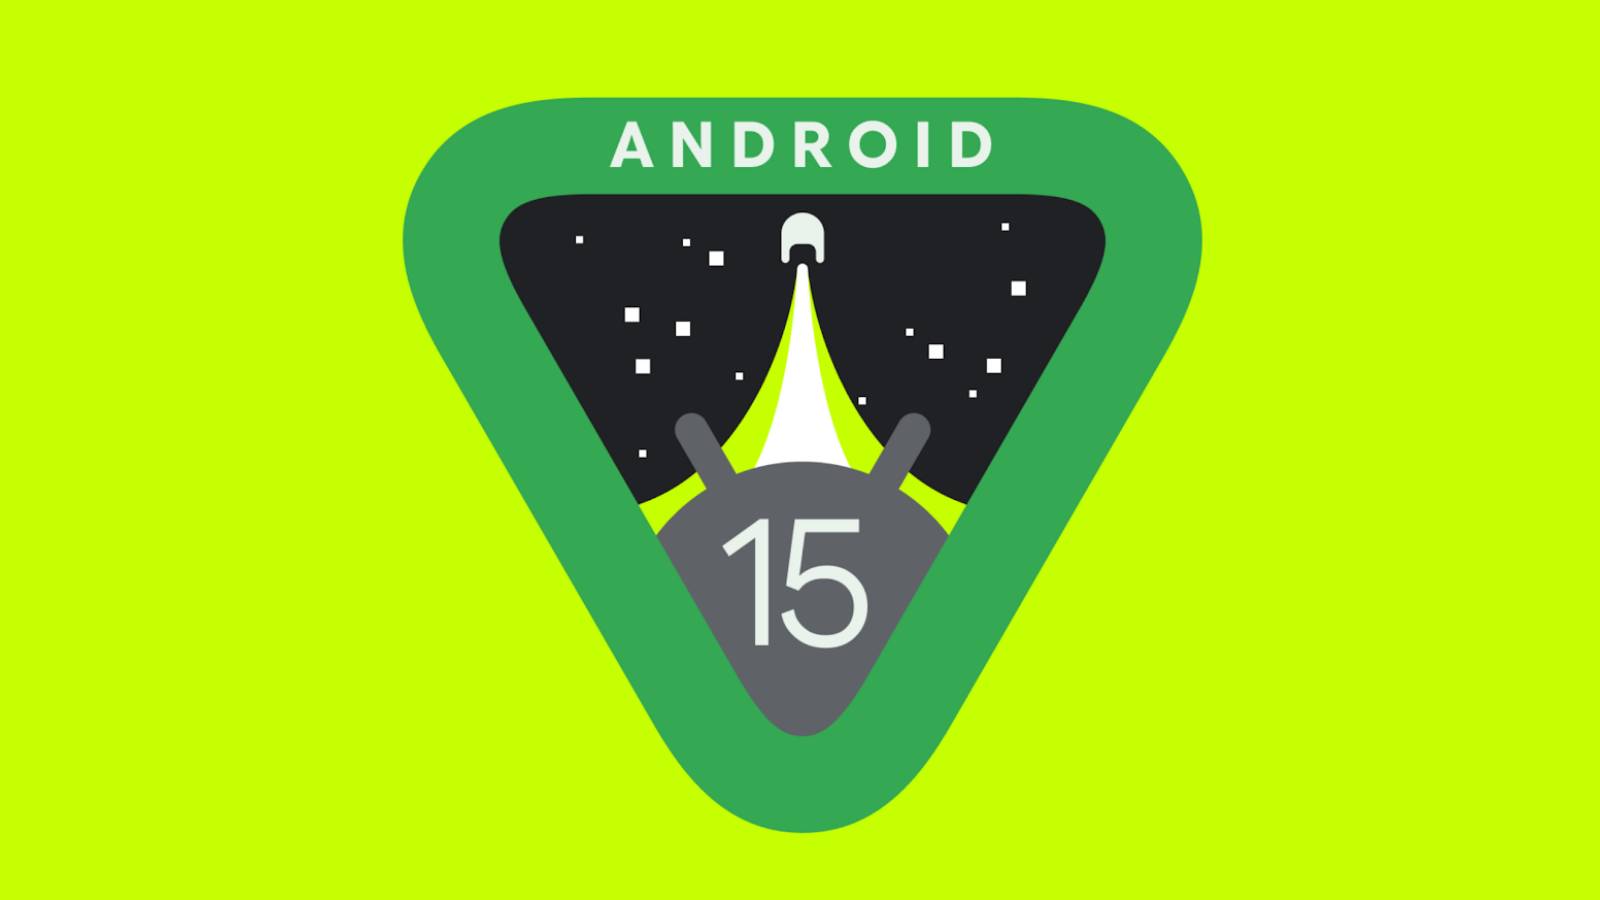 Android 15 miał funkcję Google AWESOME przejętą przez iPhone'a iOS